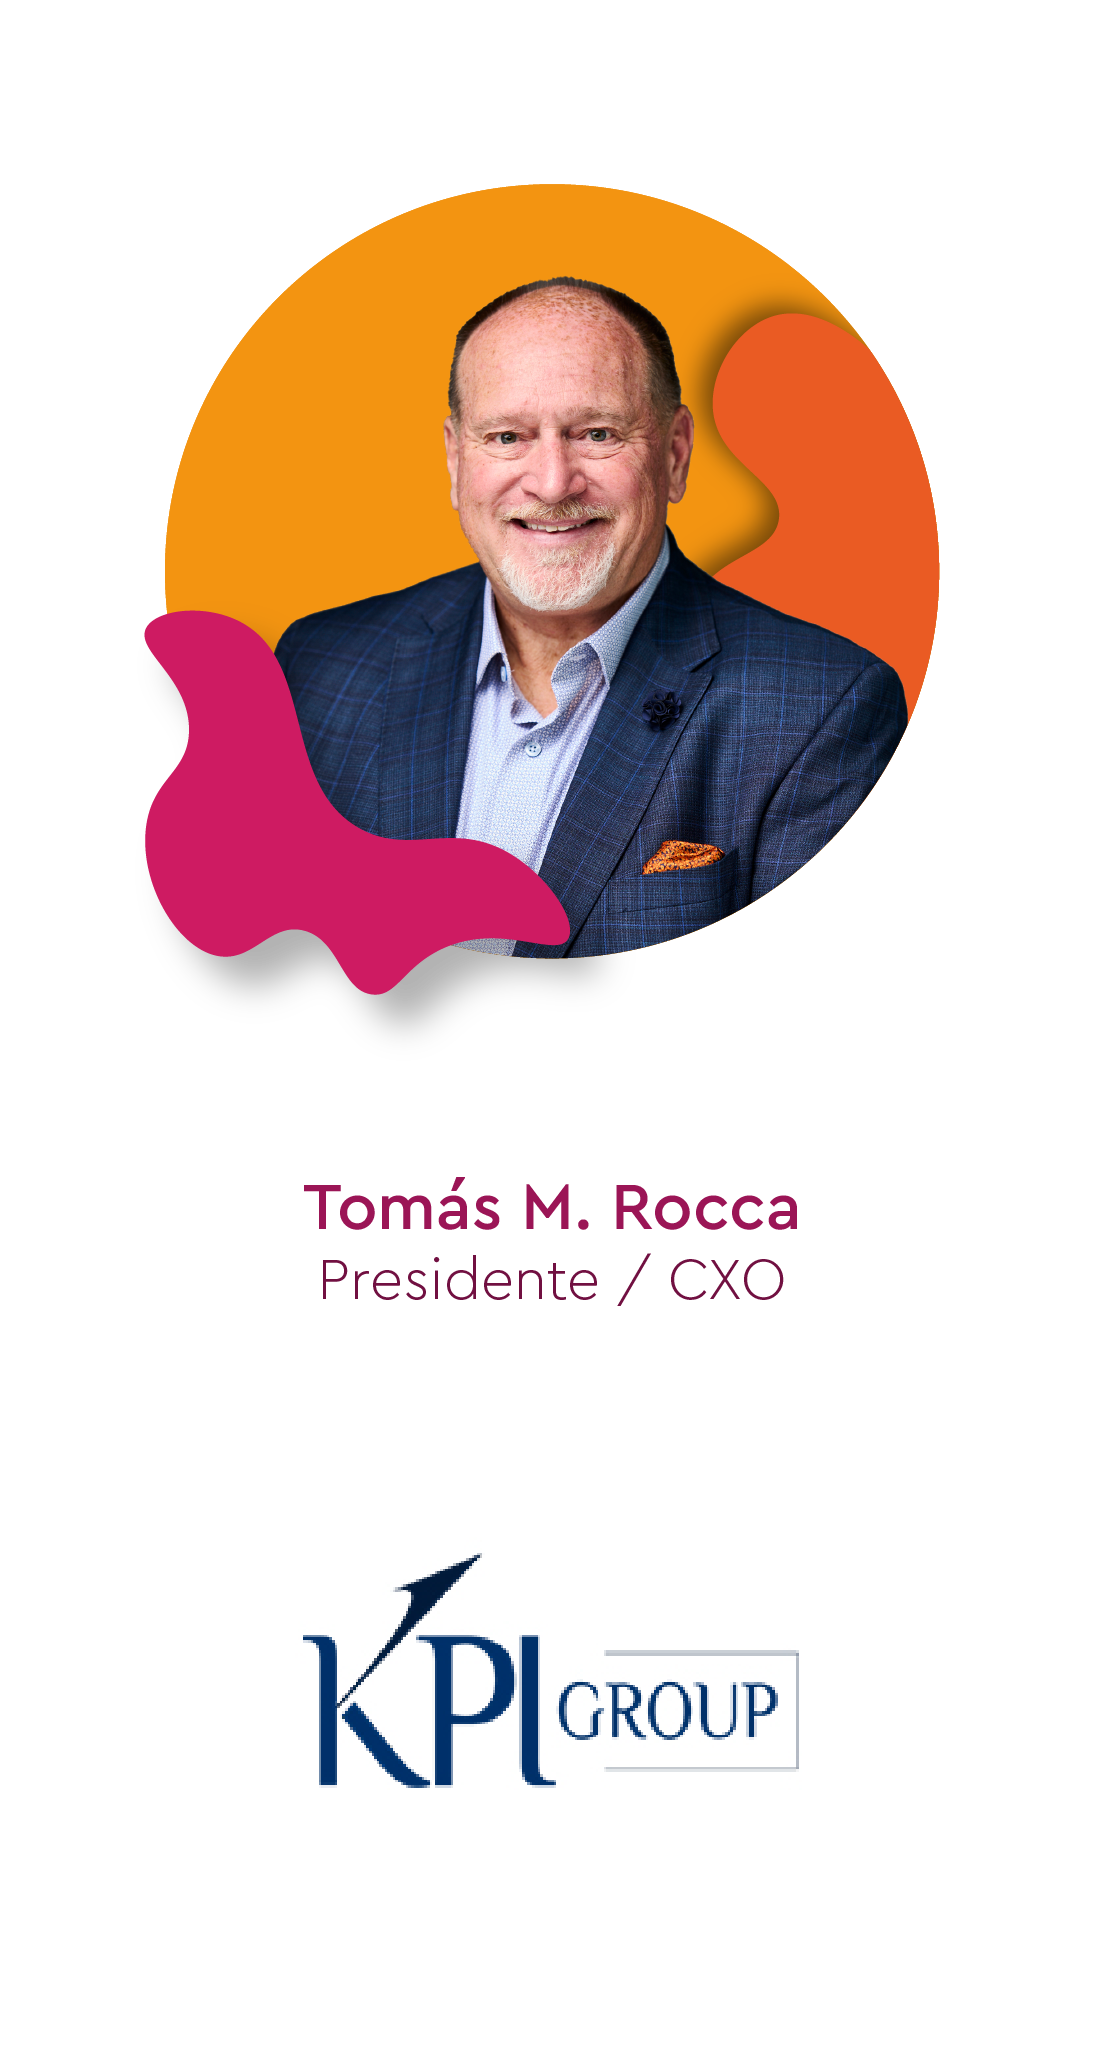 Tomás M. Rocca